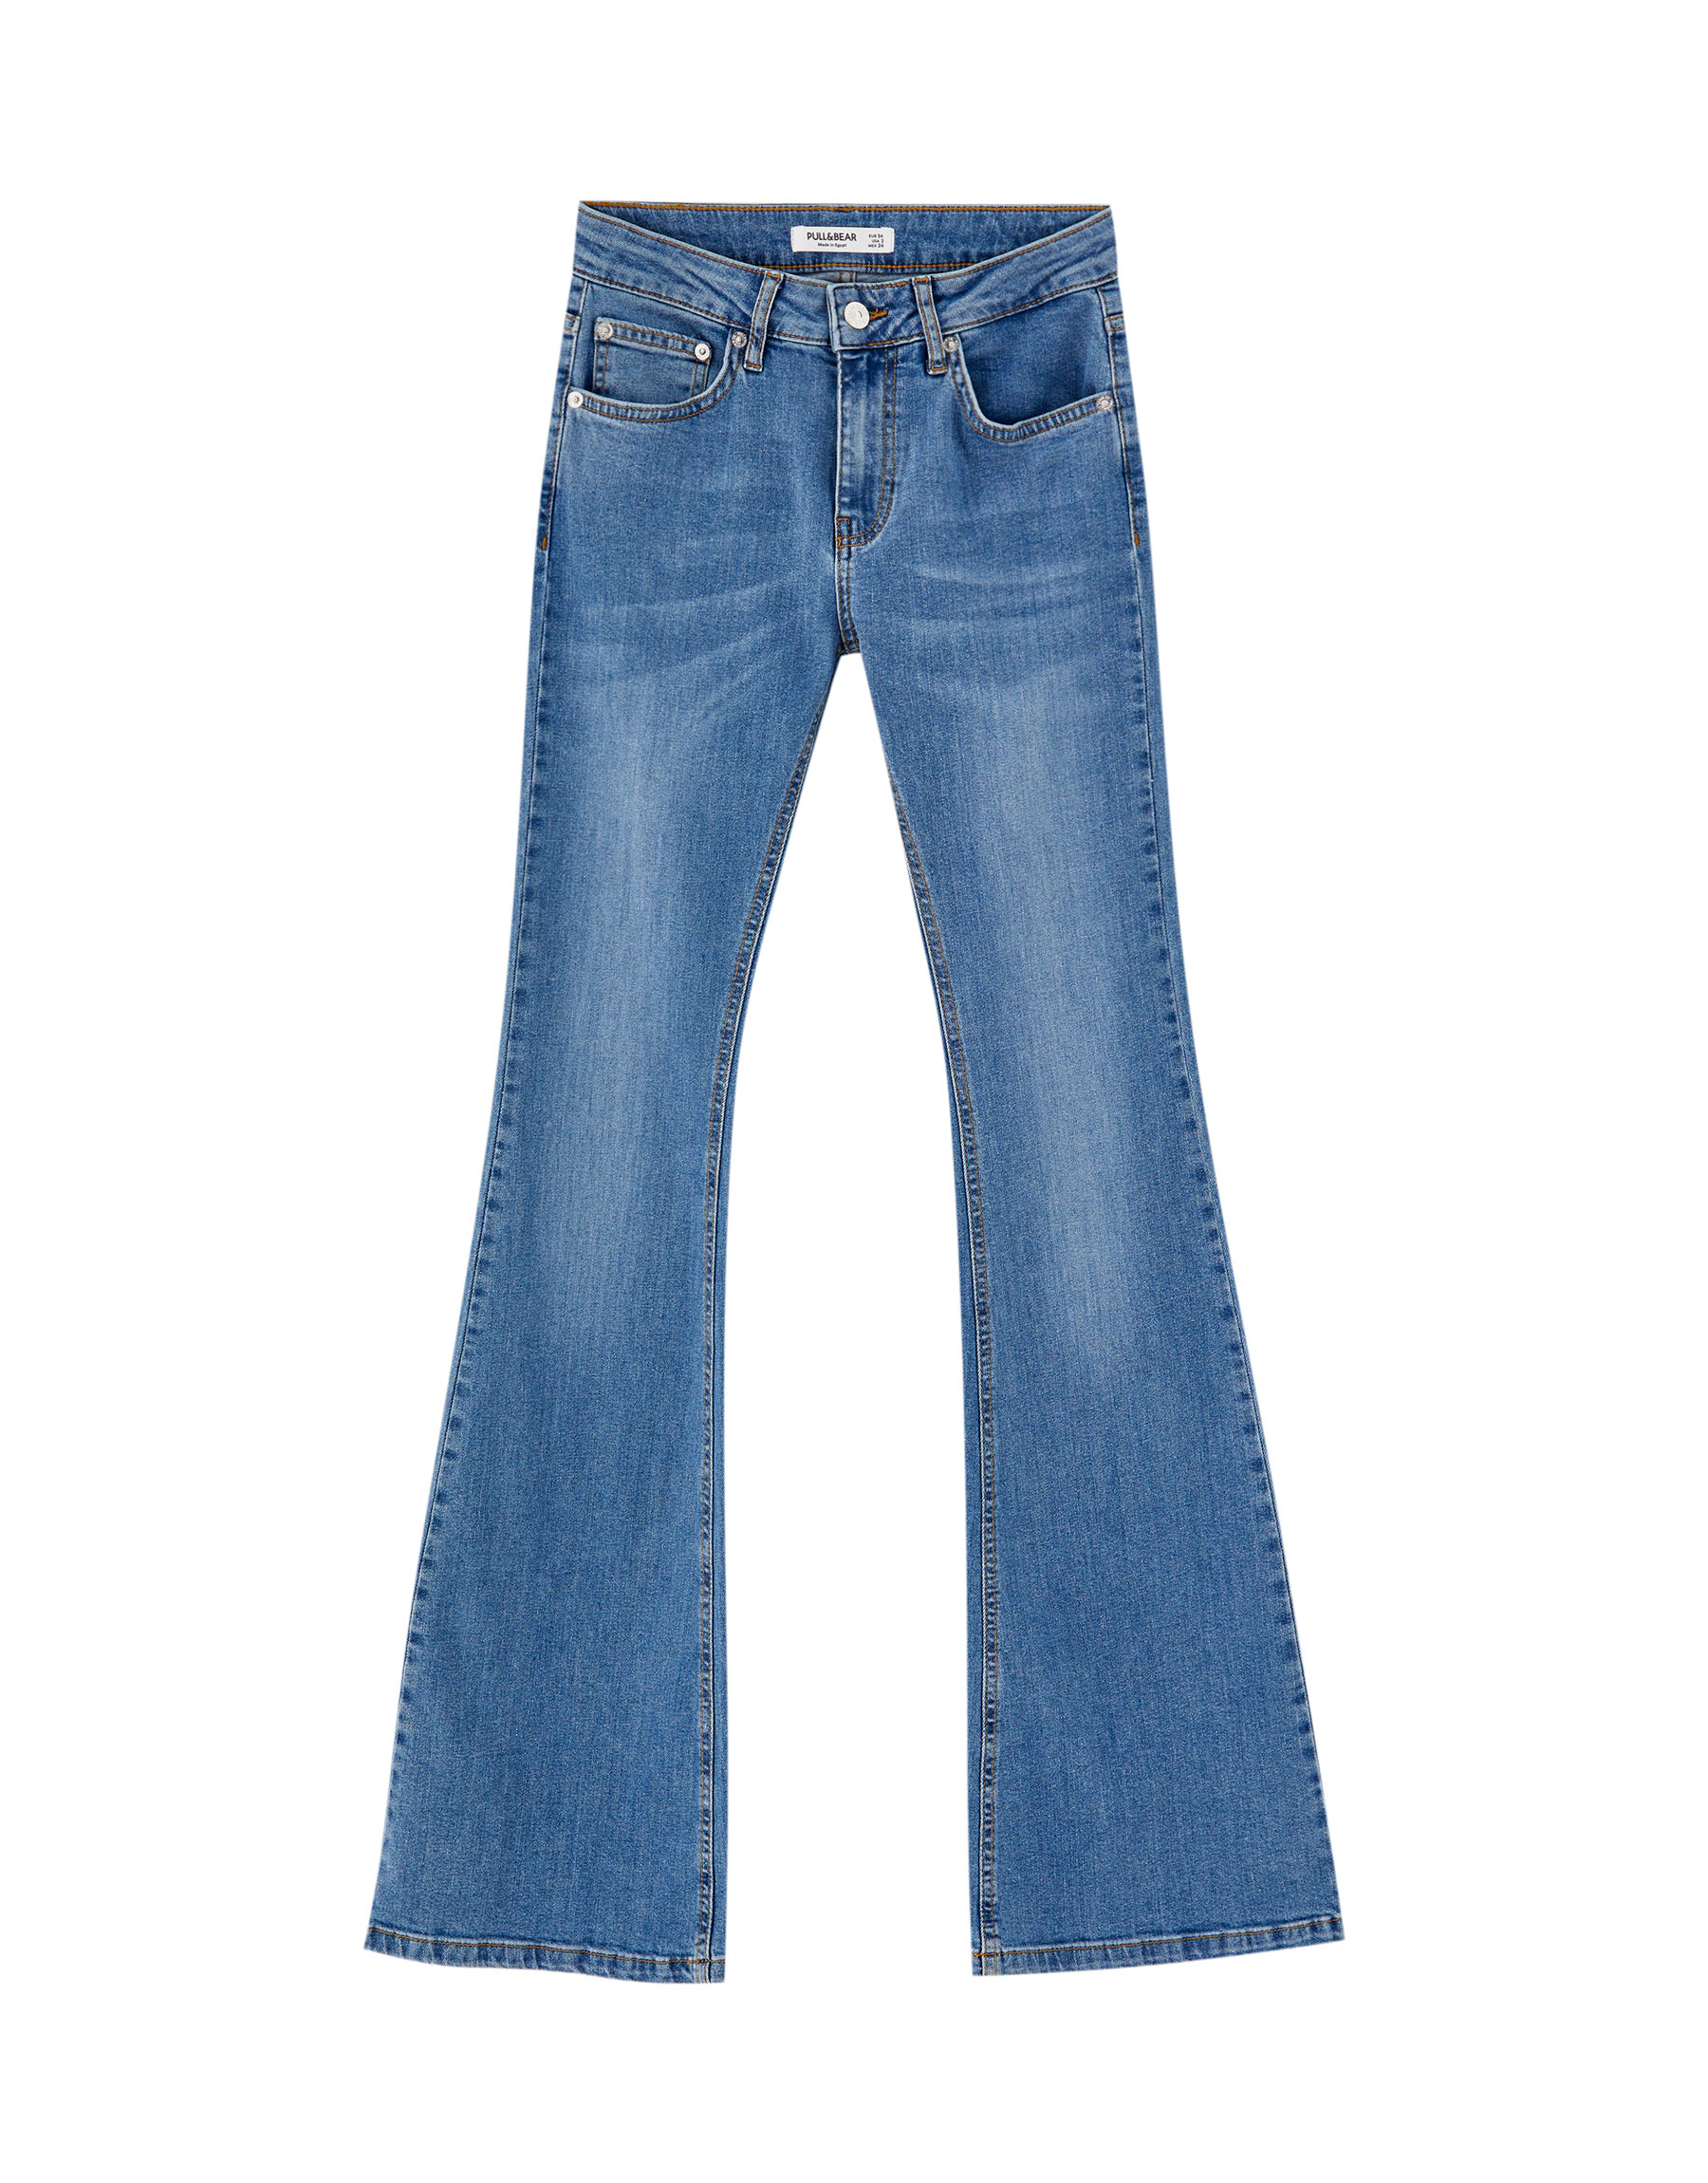 Расклешенные джинсы со средней посадкой СИНИЙ Pull & Bear